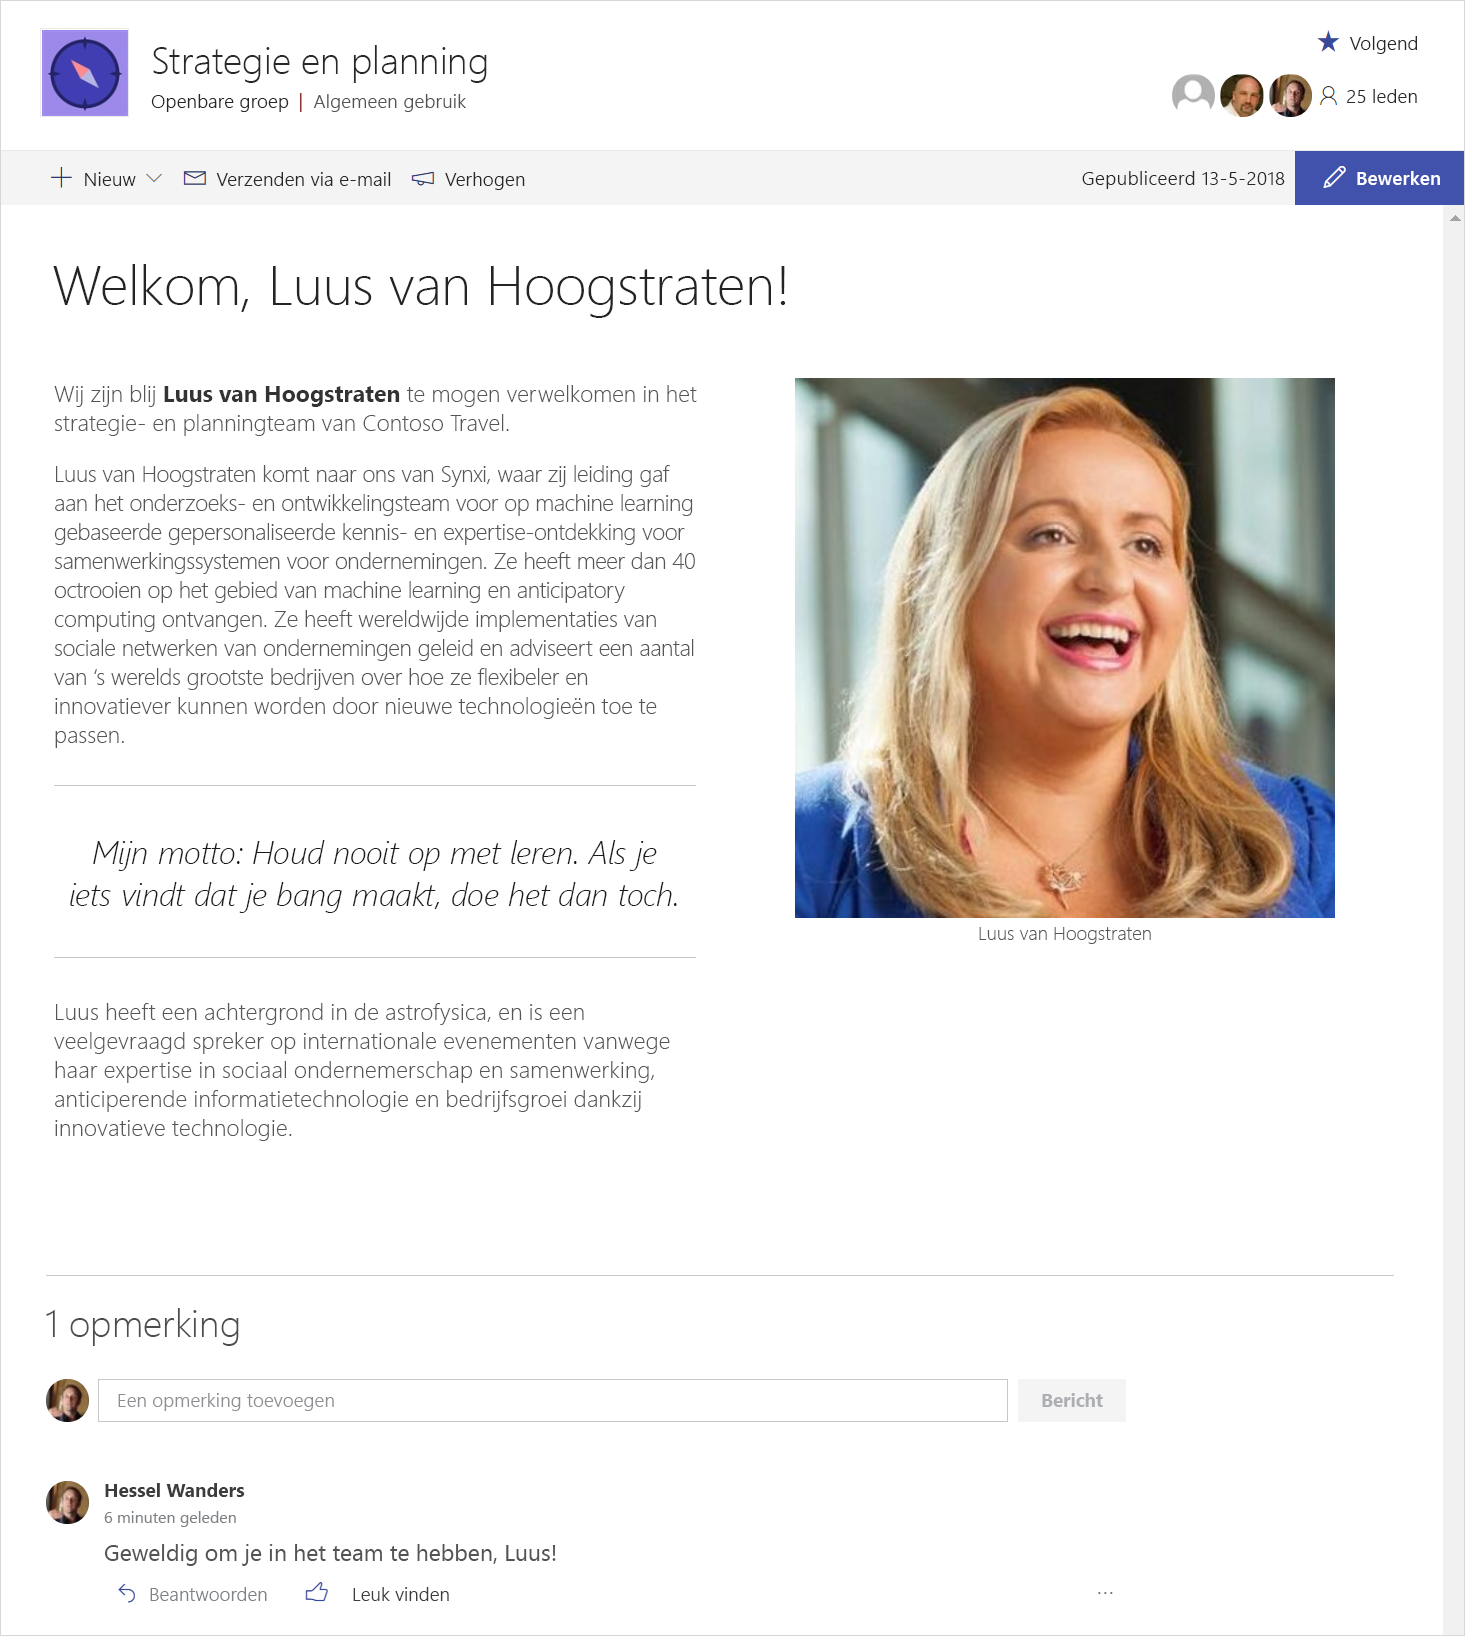 Een schermafbeelding met SharePoint-nieuws waarin gebruik wordt gemaakt van pagina’s en webonderdelen met uitgebreide, dynamische inhoud om mensen op de hoogte te houden.